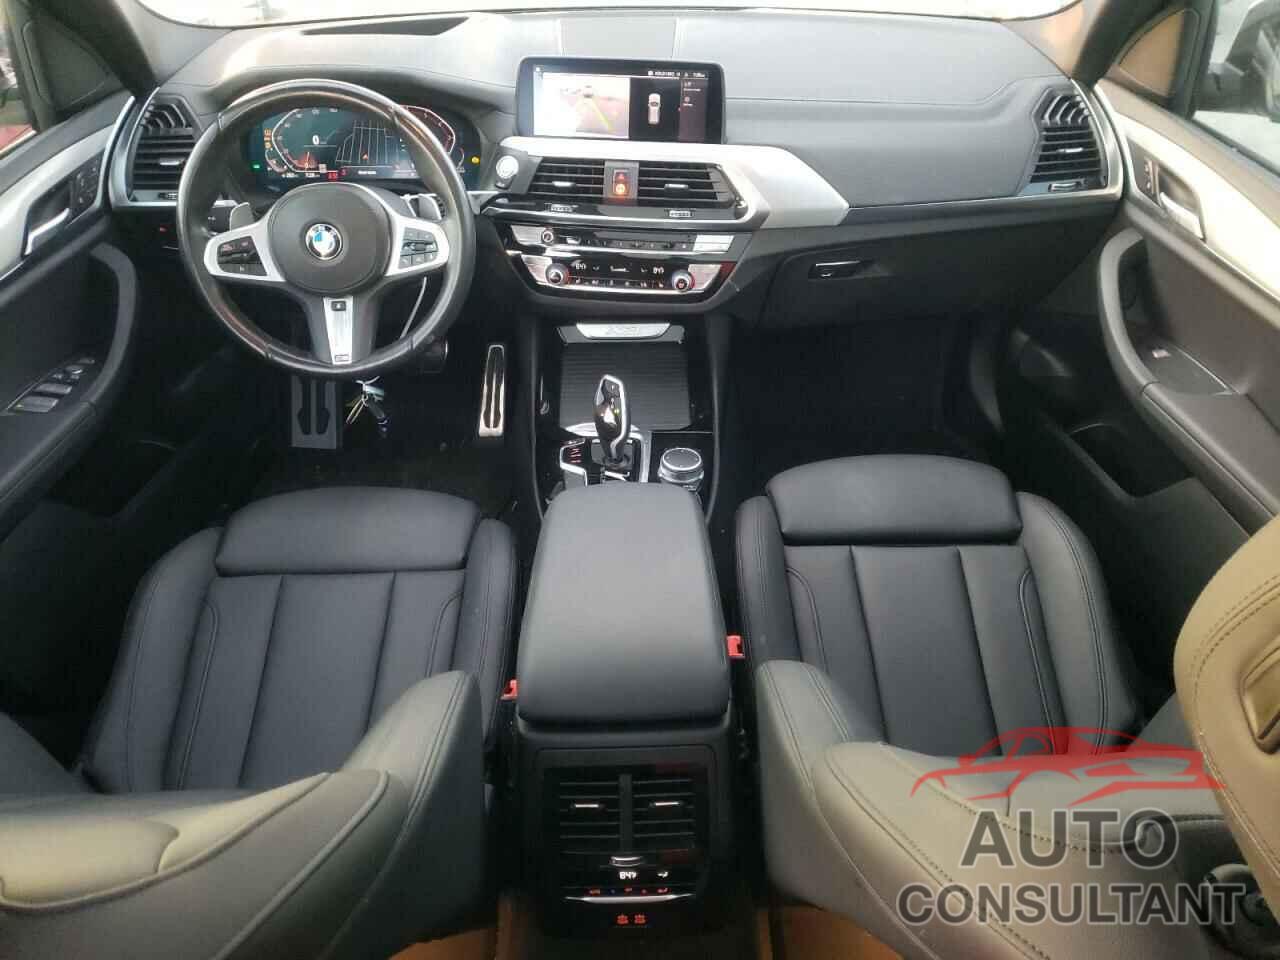 BMW X3 2021 - 5UXTY3C05M9G03676